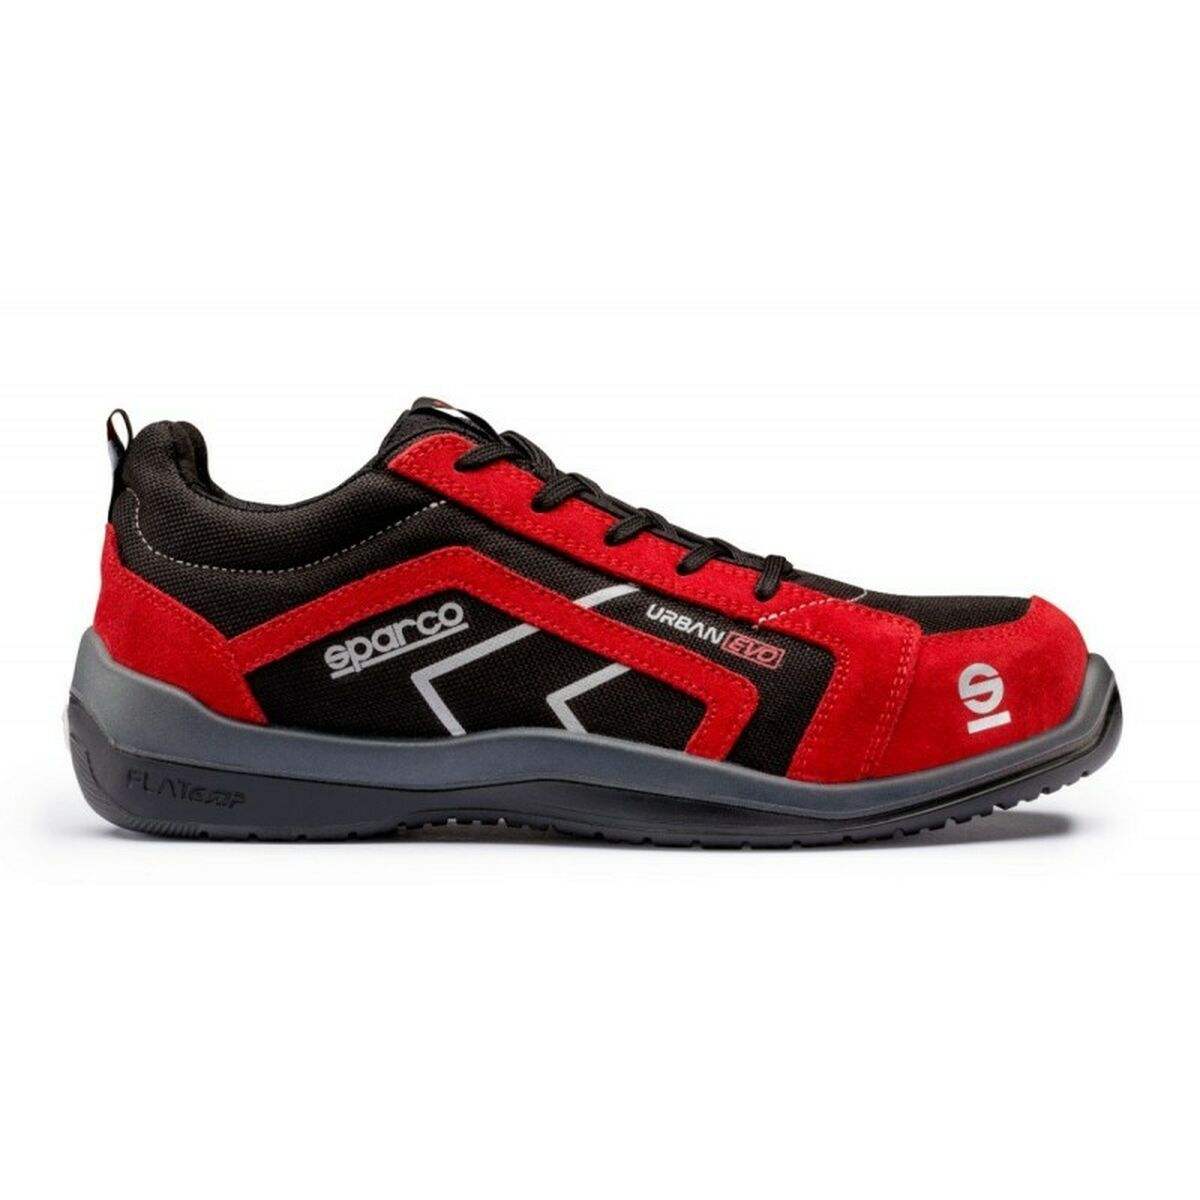 Chaussures de Sport pour Homme Sparco Urban Evo Modena Rouge S3 SRC 40